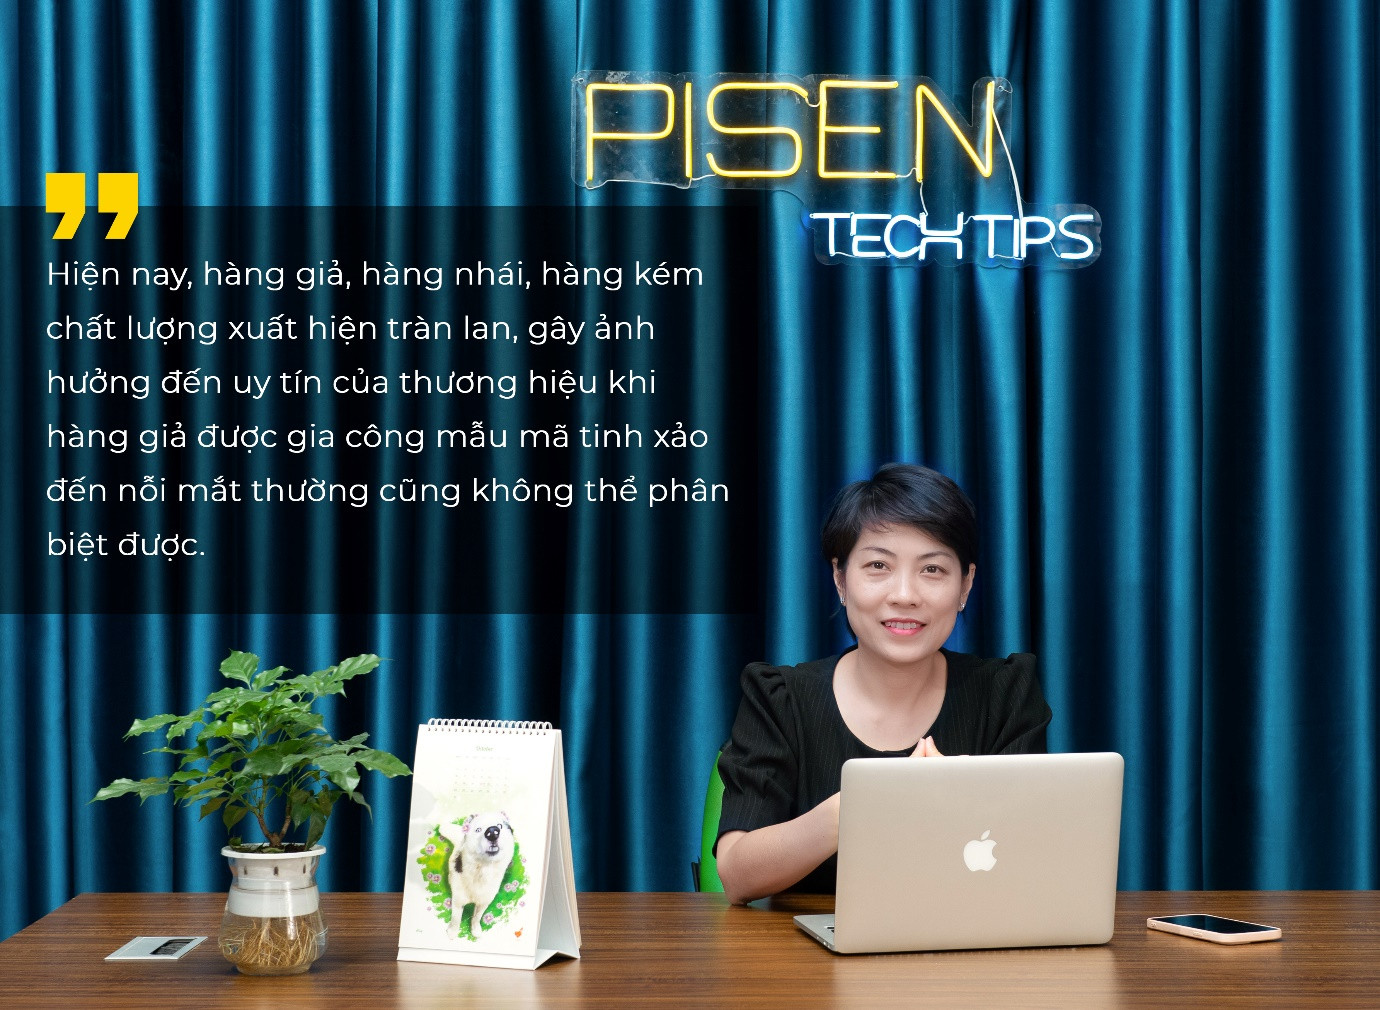 Ms. Juvy Nguyen giám đốc phát triển Pisen Việt Nam “Smartphone - trợ thủ số 1 của bạn, PISEN - trợ thủ số 1 cho smartphone” - Ảnh 2.